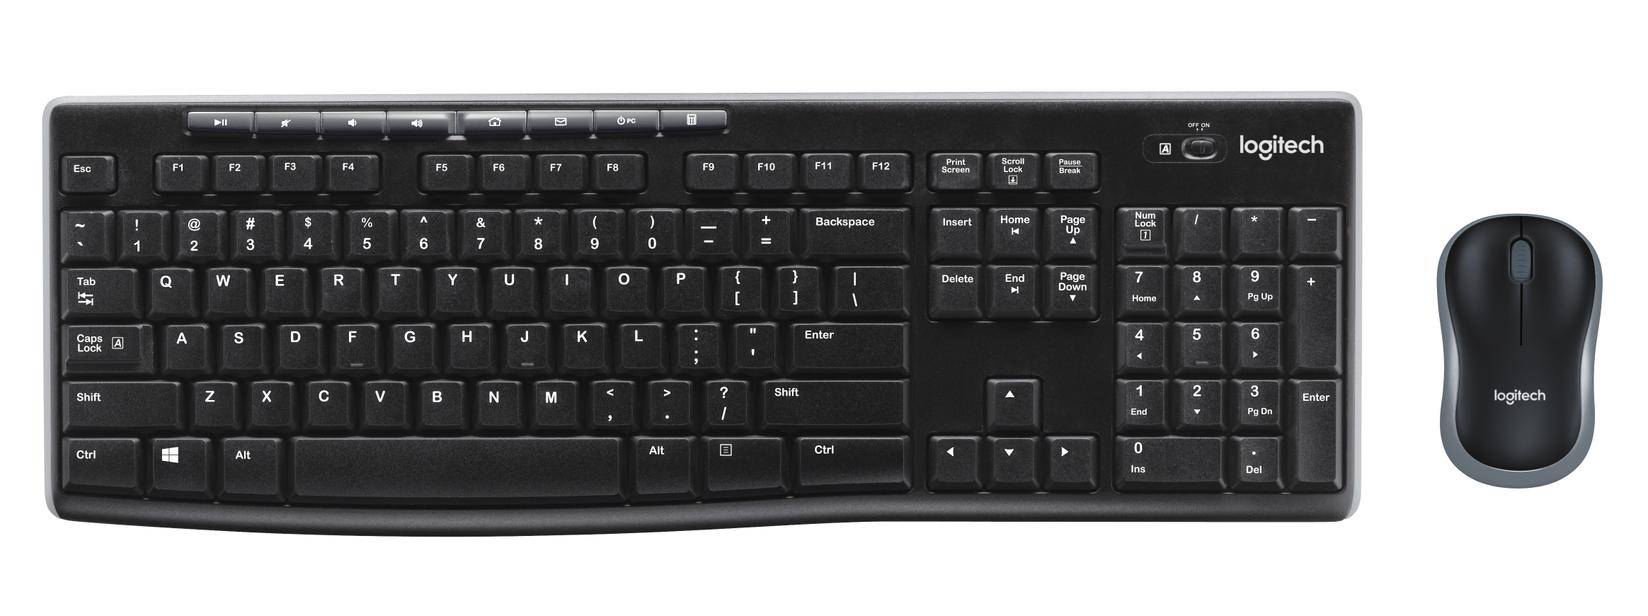 Logitech MK270 Bežična tastatura i miš, Crni